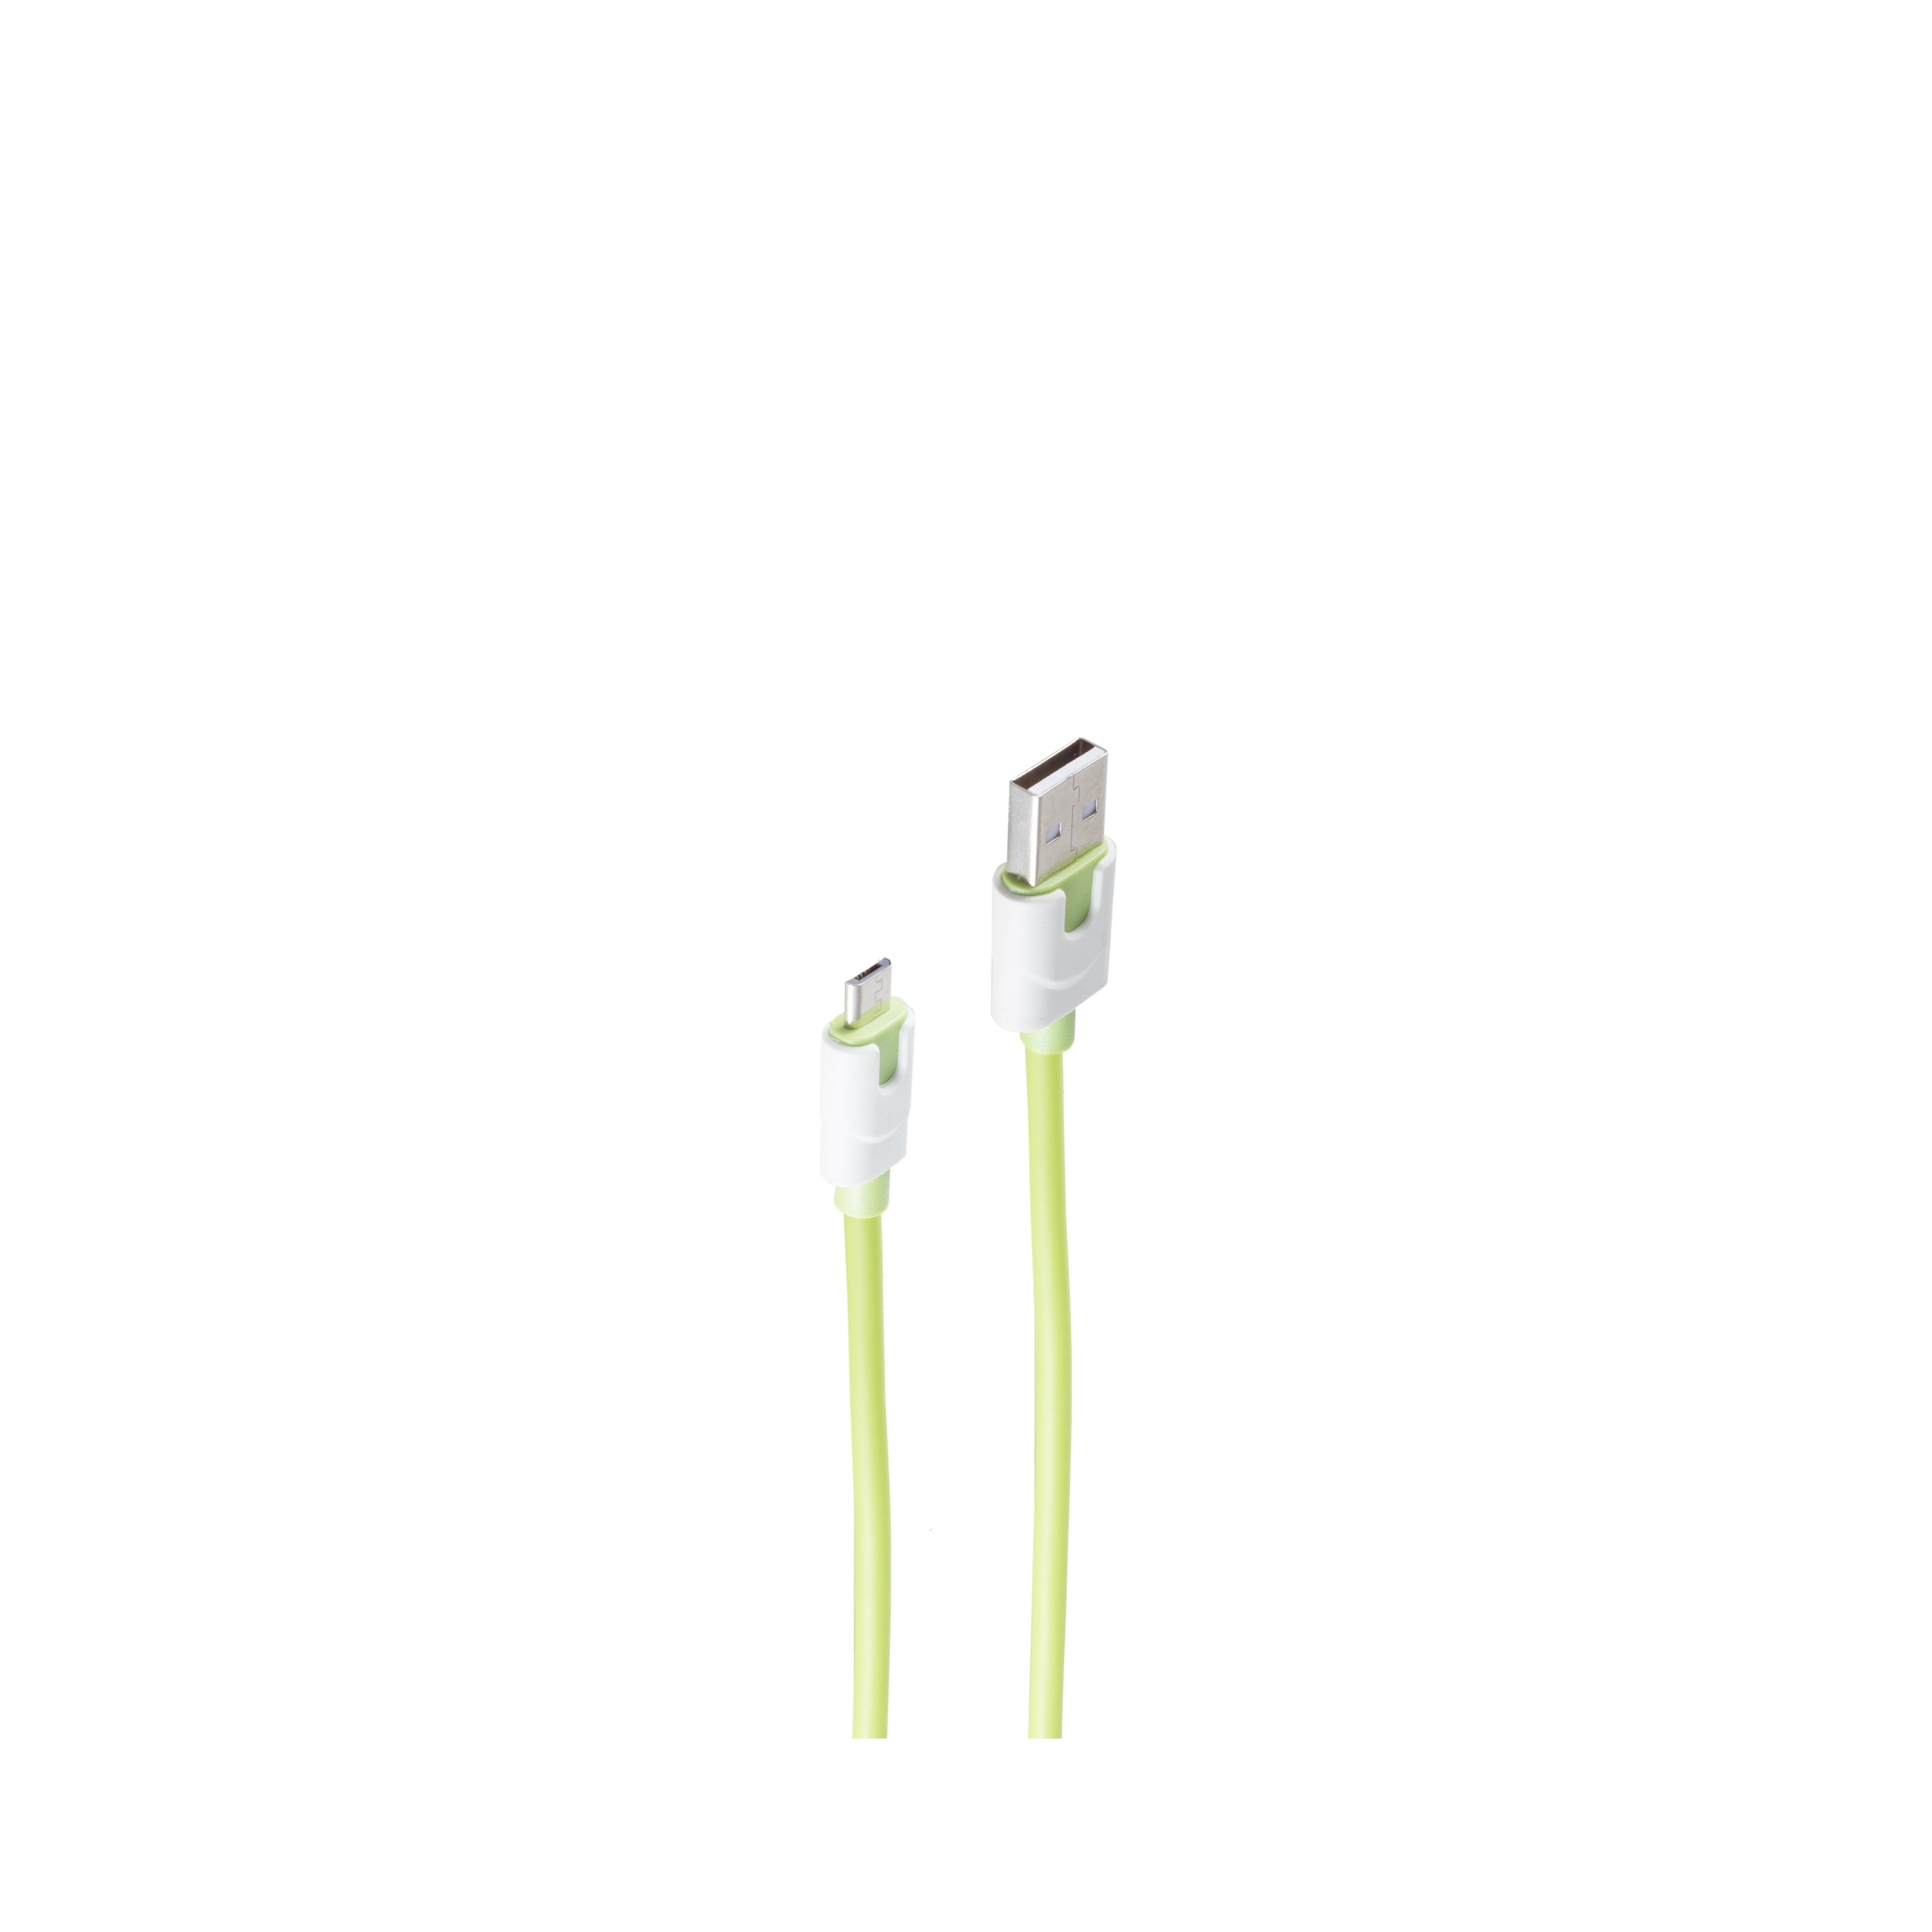 auf Micro USB grün, Ladekabel, USB-Ladekabel SHIVERPEAKS USB 2 B, 2m, grün Stecker m, A